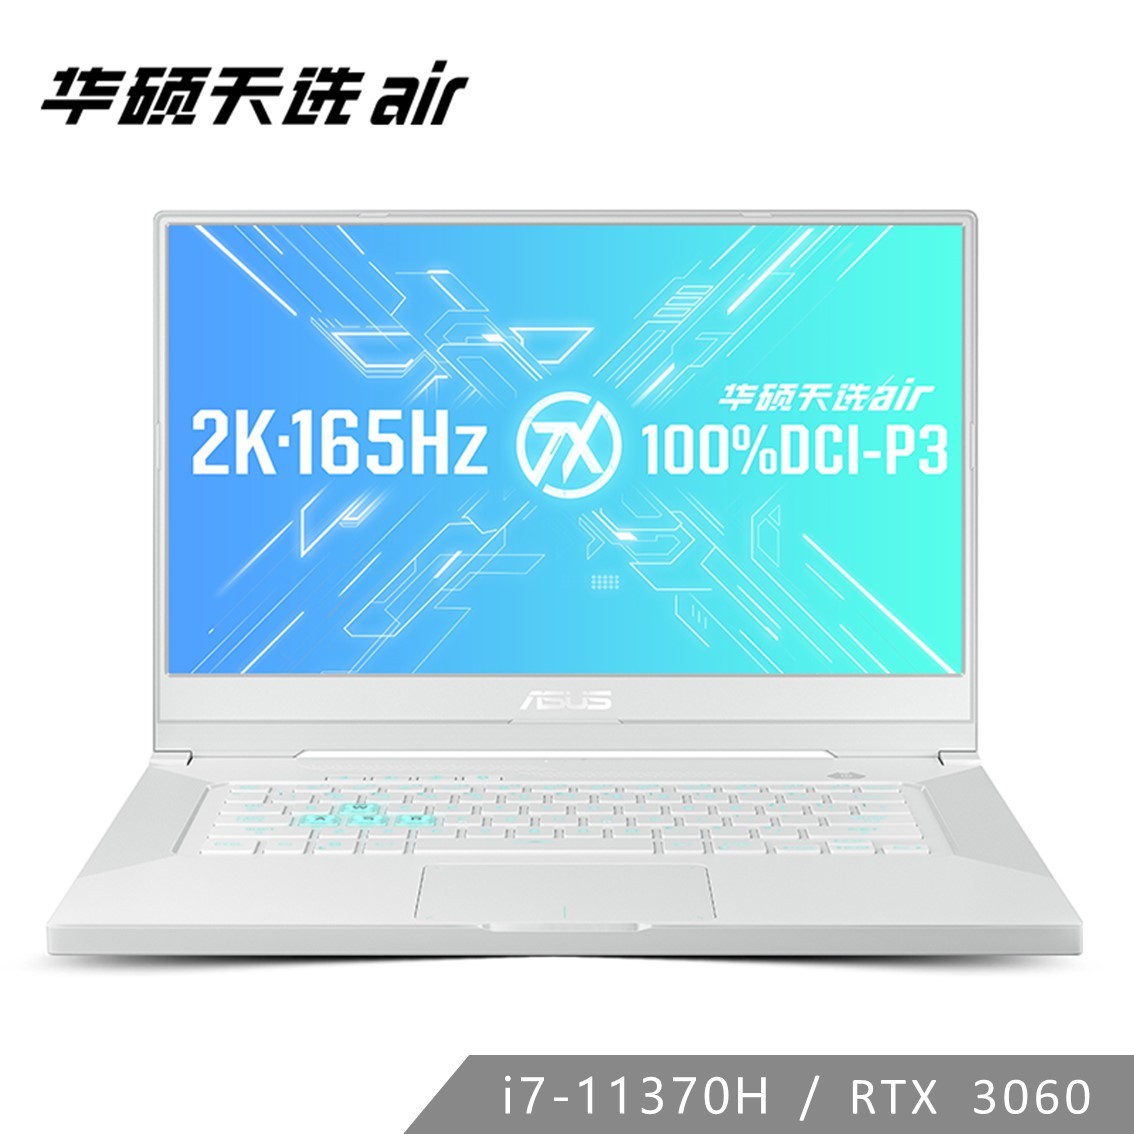 天选air 月曜白 11代酷睿i7 RTX3060 165Hz 2K全能本笔记本电脑-15.6英寸（Win10 Home/i7-11370H/16GB/512G SSD/RTX3060 6G IPS）